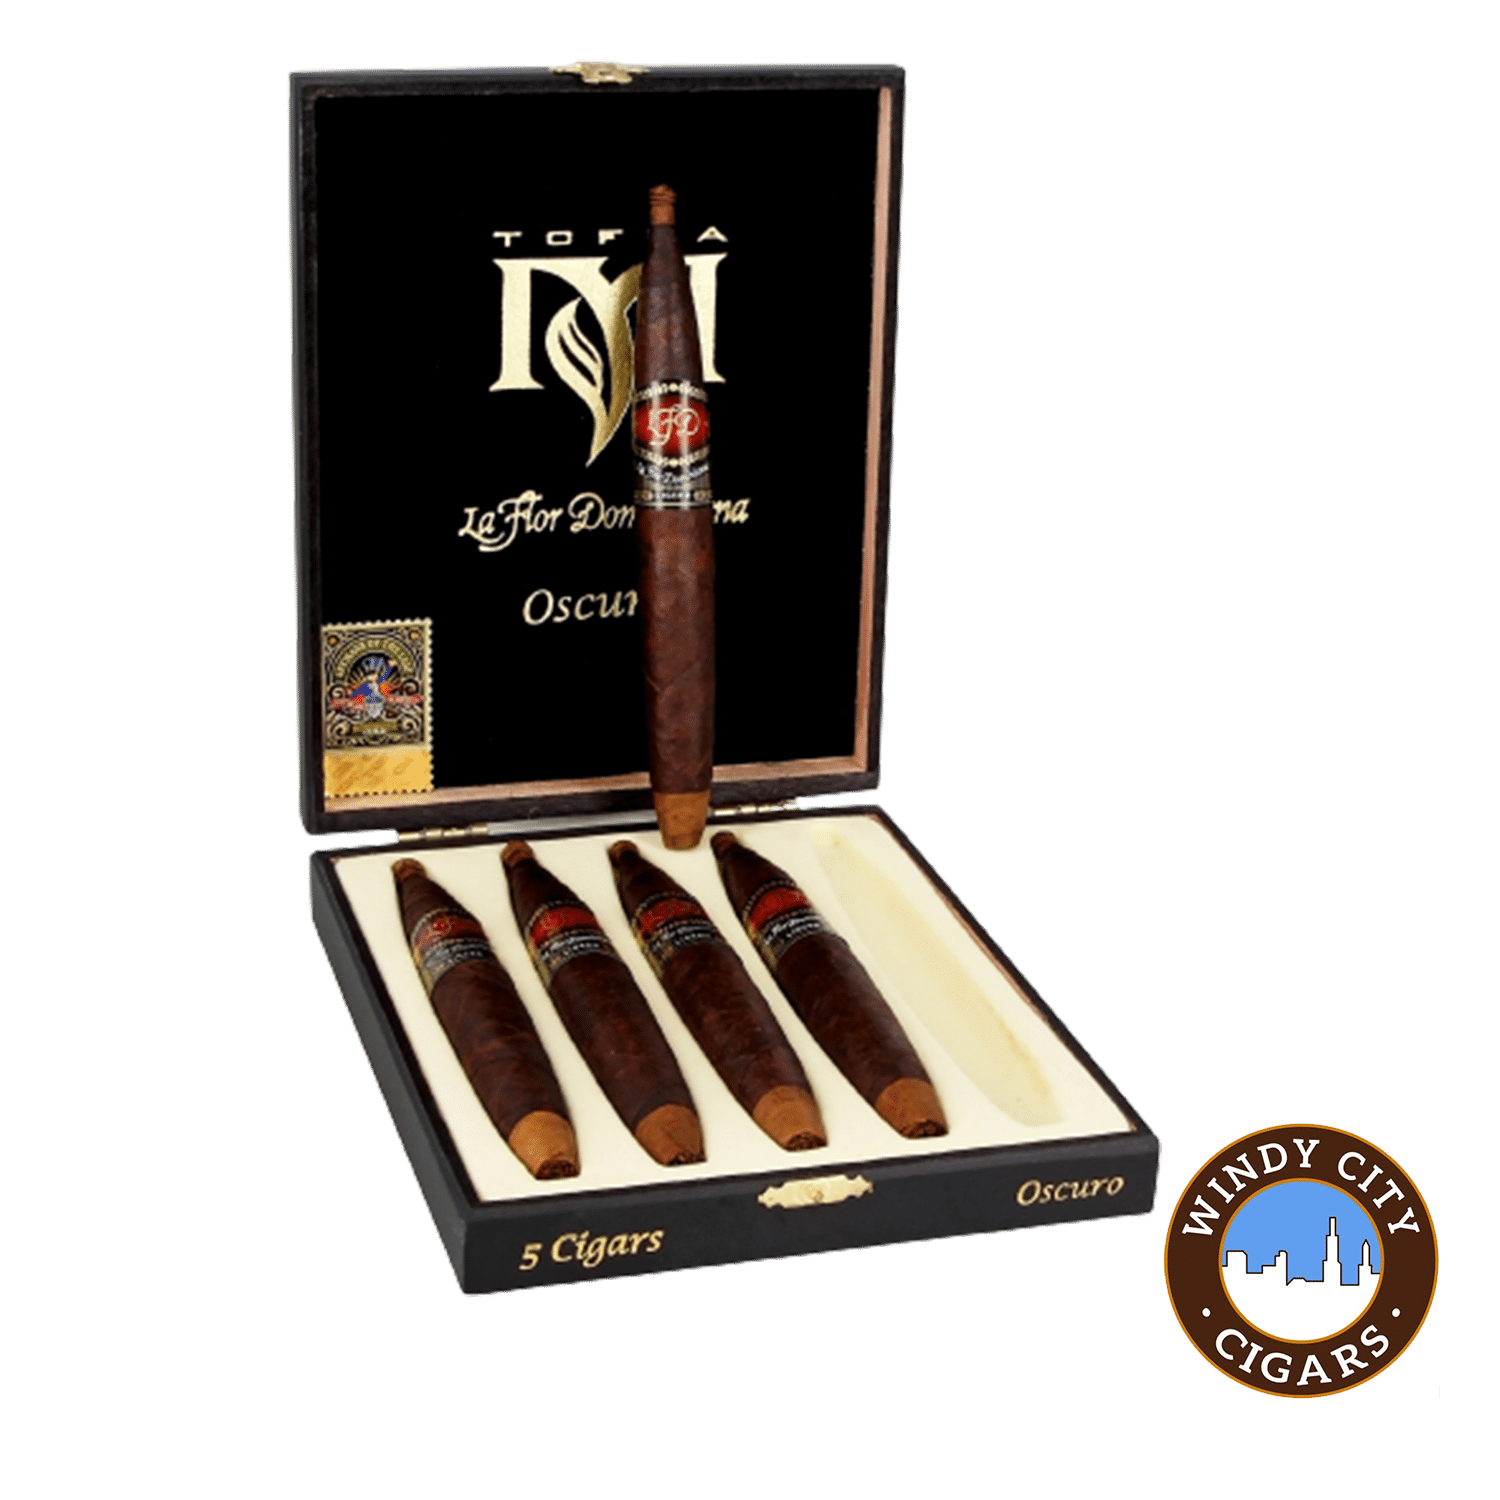 La Flor Dominicana TCFKA M Osc 5 Cigars